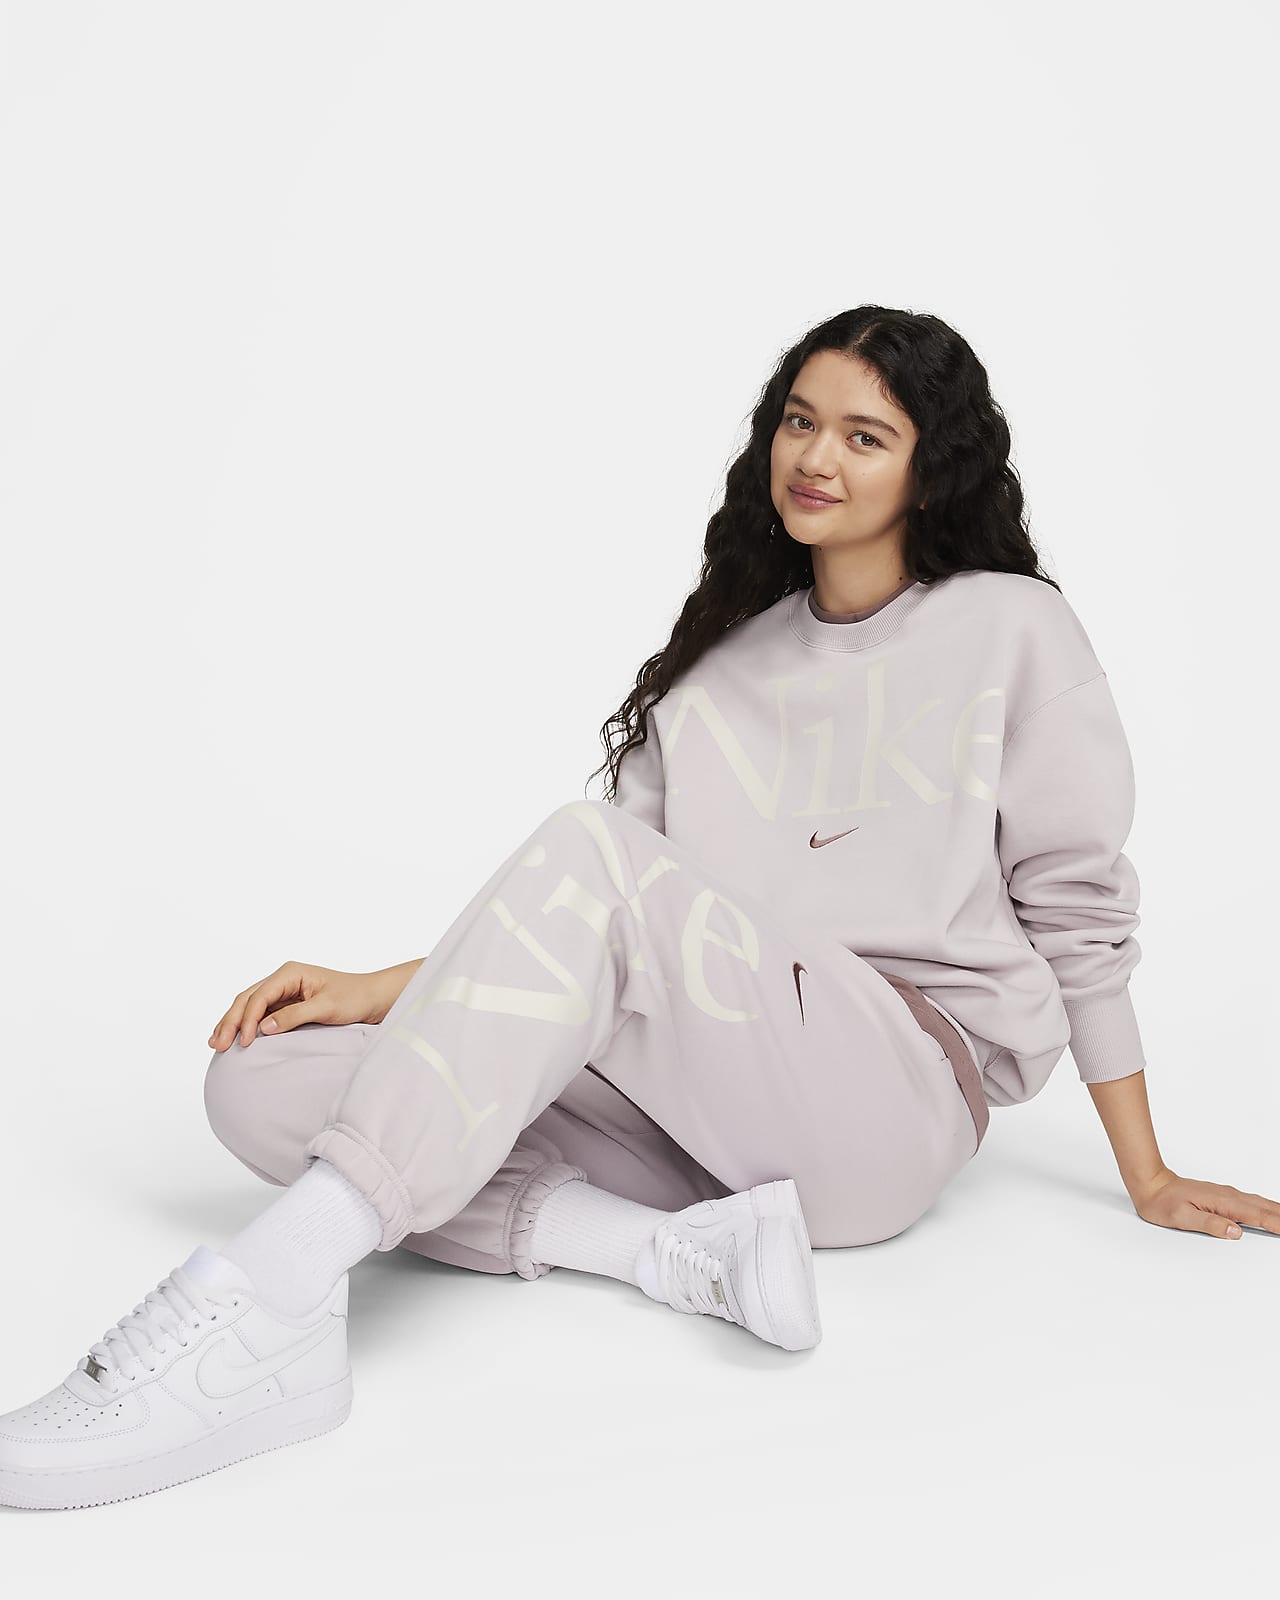 Nike Spring 2019 : Gender-Fluid - Reflective Tracksuits (Nike)